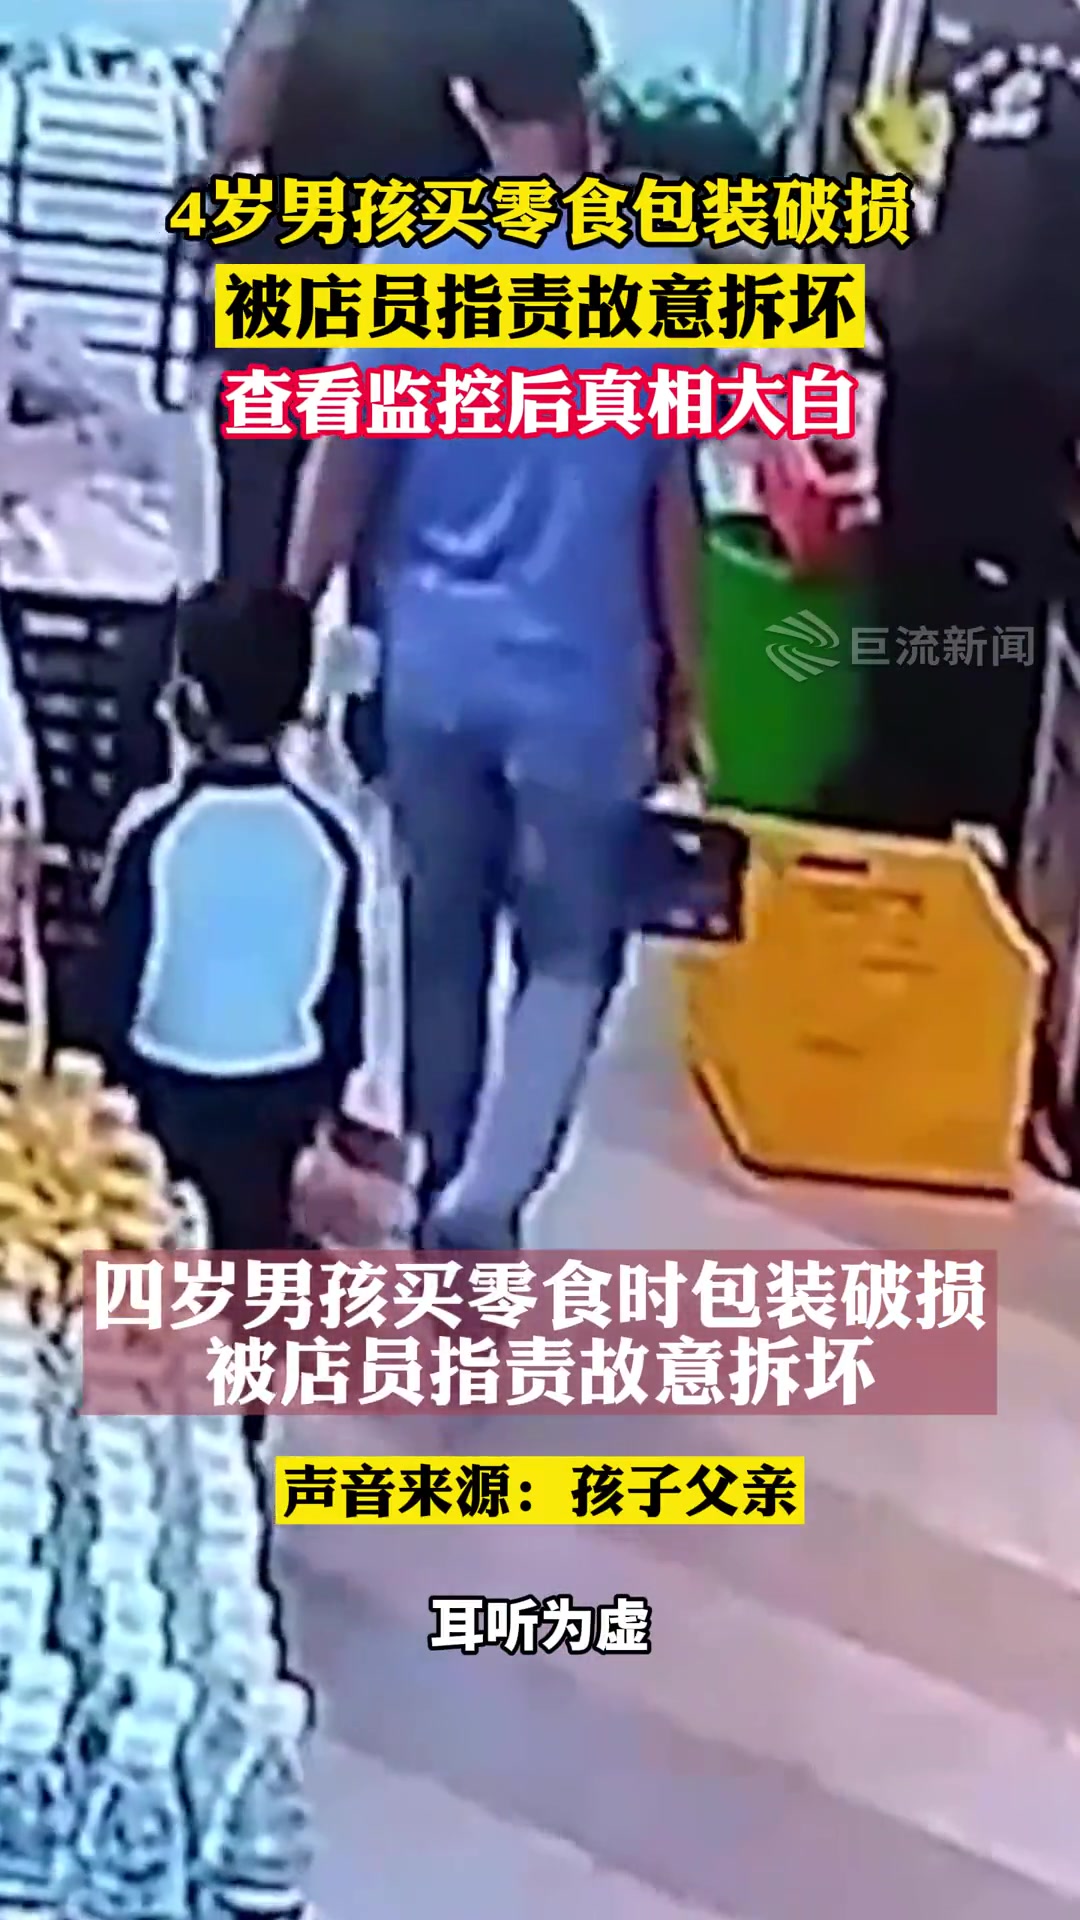 4岁男孩买零食包装破损 被店员指责故意拆坏